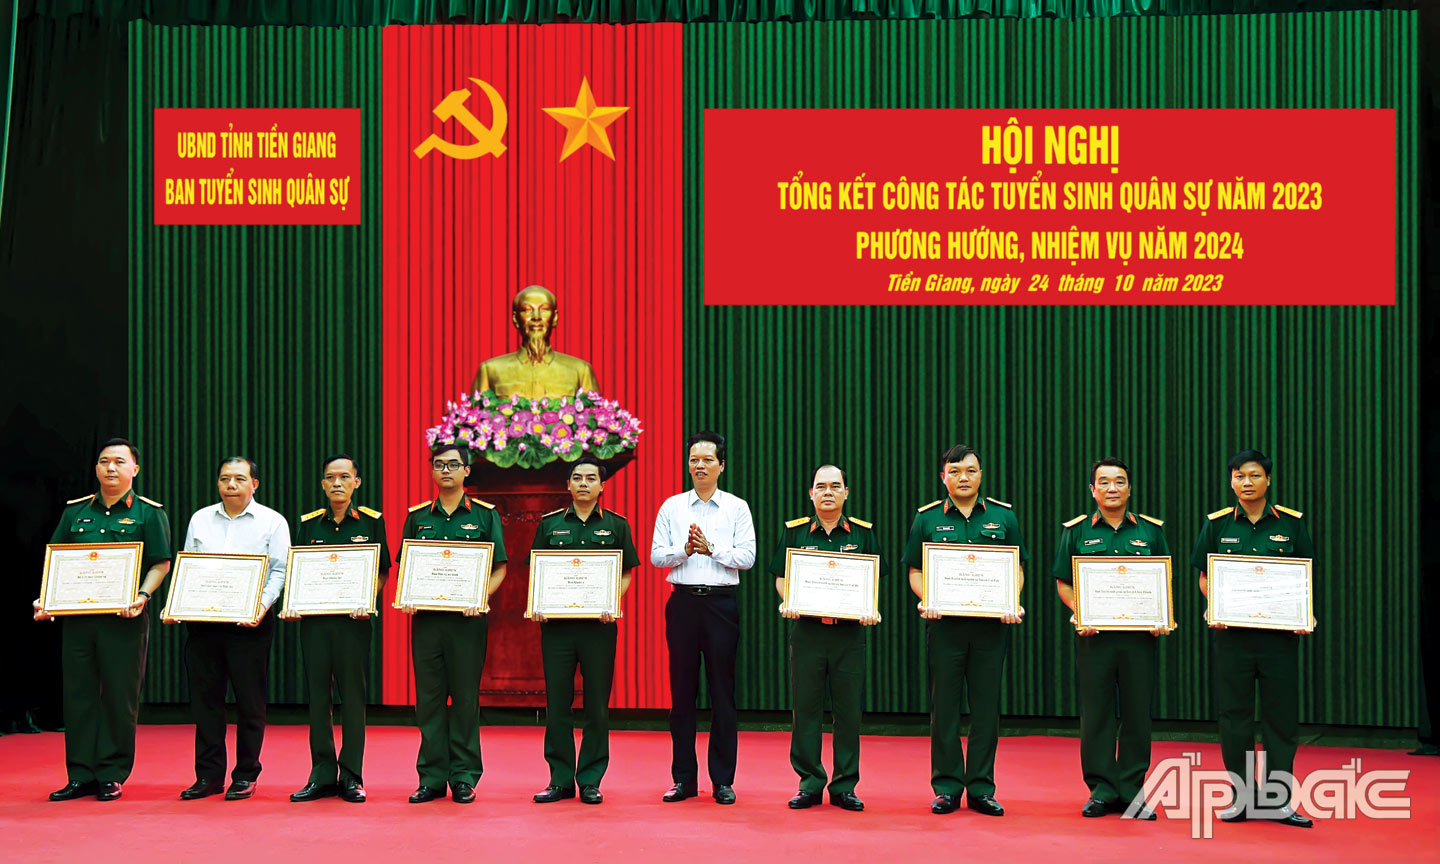 Tỉnh ủy viên, Phó Chủ tịch UBND tỉnh Nguyễn Thành Diệu, Trưởng Ban Tuyển sinh quân sự tỉnh tặng Bằng khen của UBND tỉnh cho các tập thể đã có thành tích trong thực hiện công tác tuyển sinh quân sự năm 2023. 